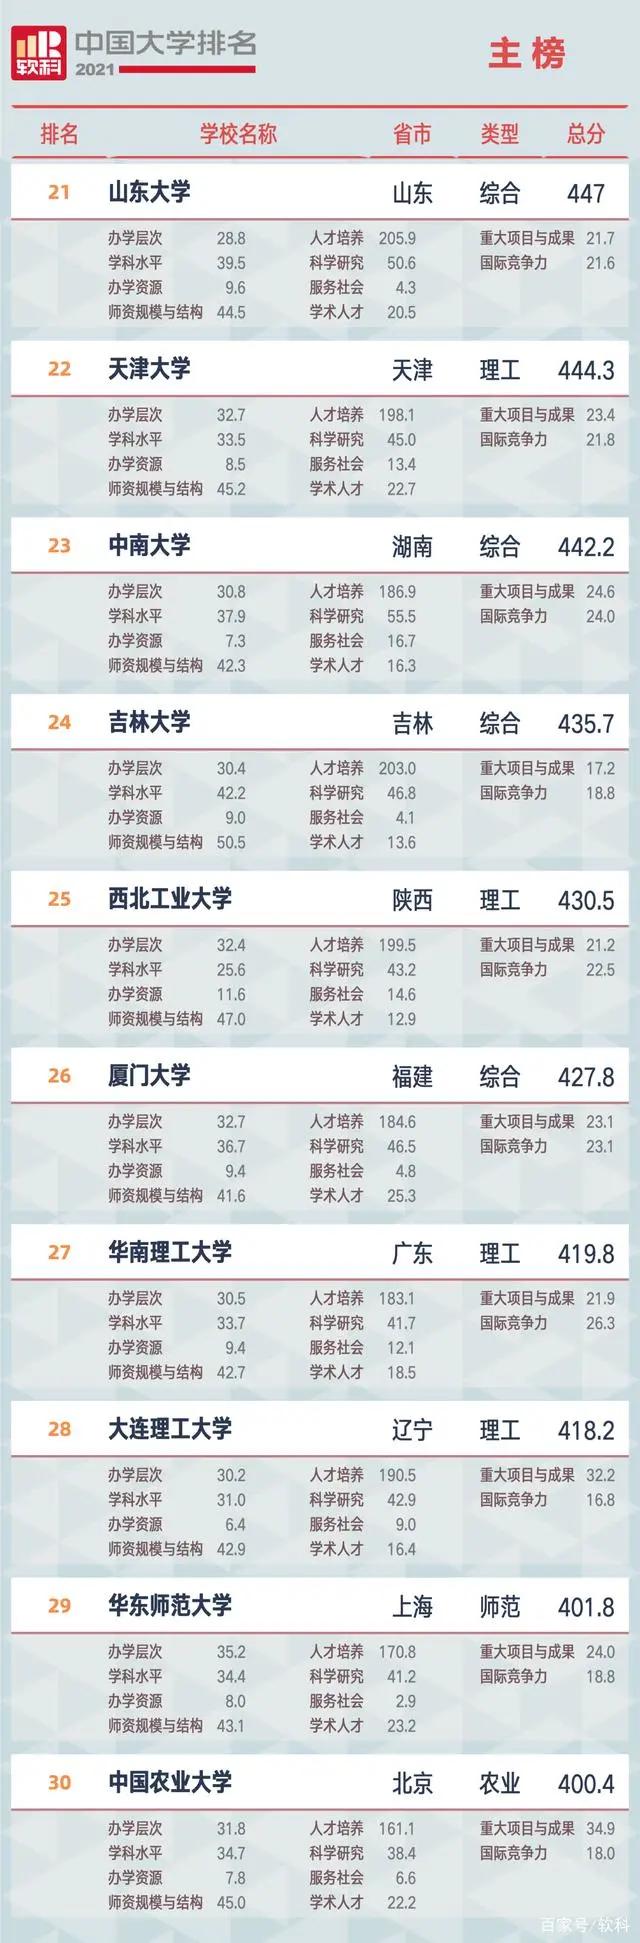 中国学校排行榜_2021中国最好大学排名:清华第一,北大第二,第三竟然是它!